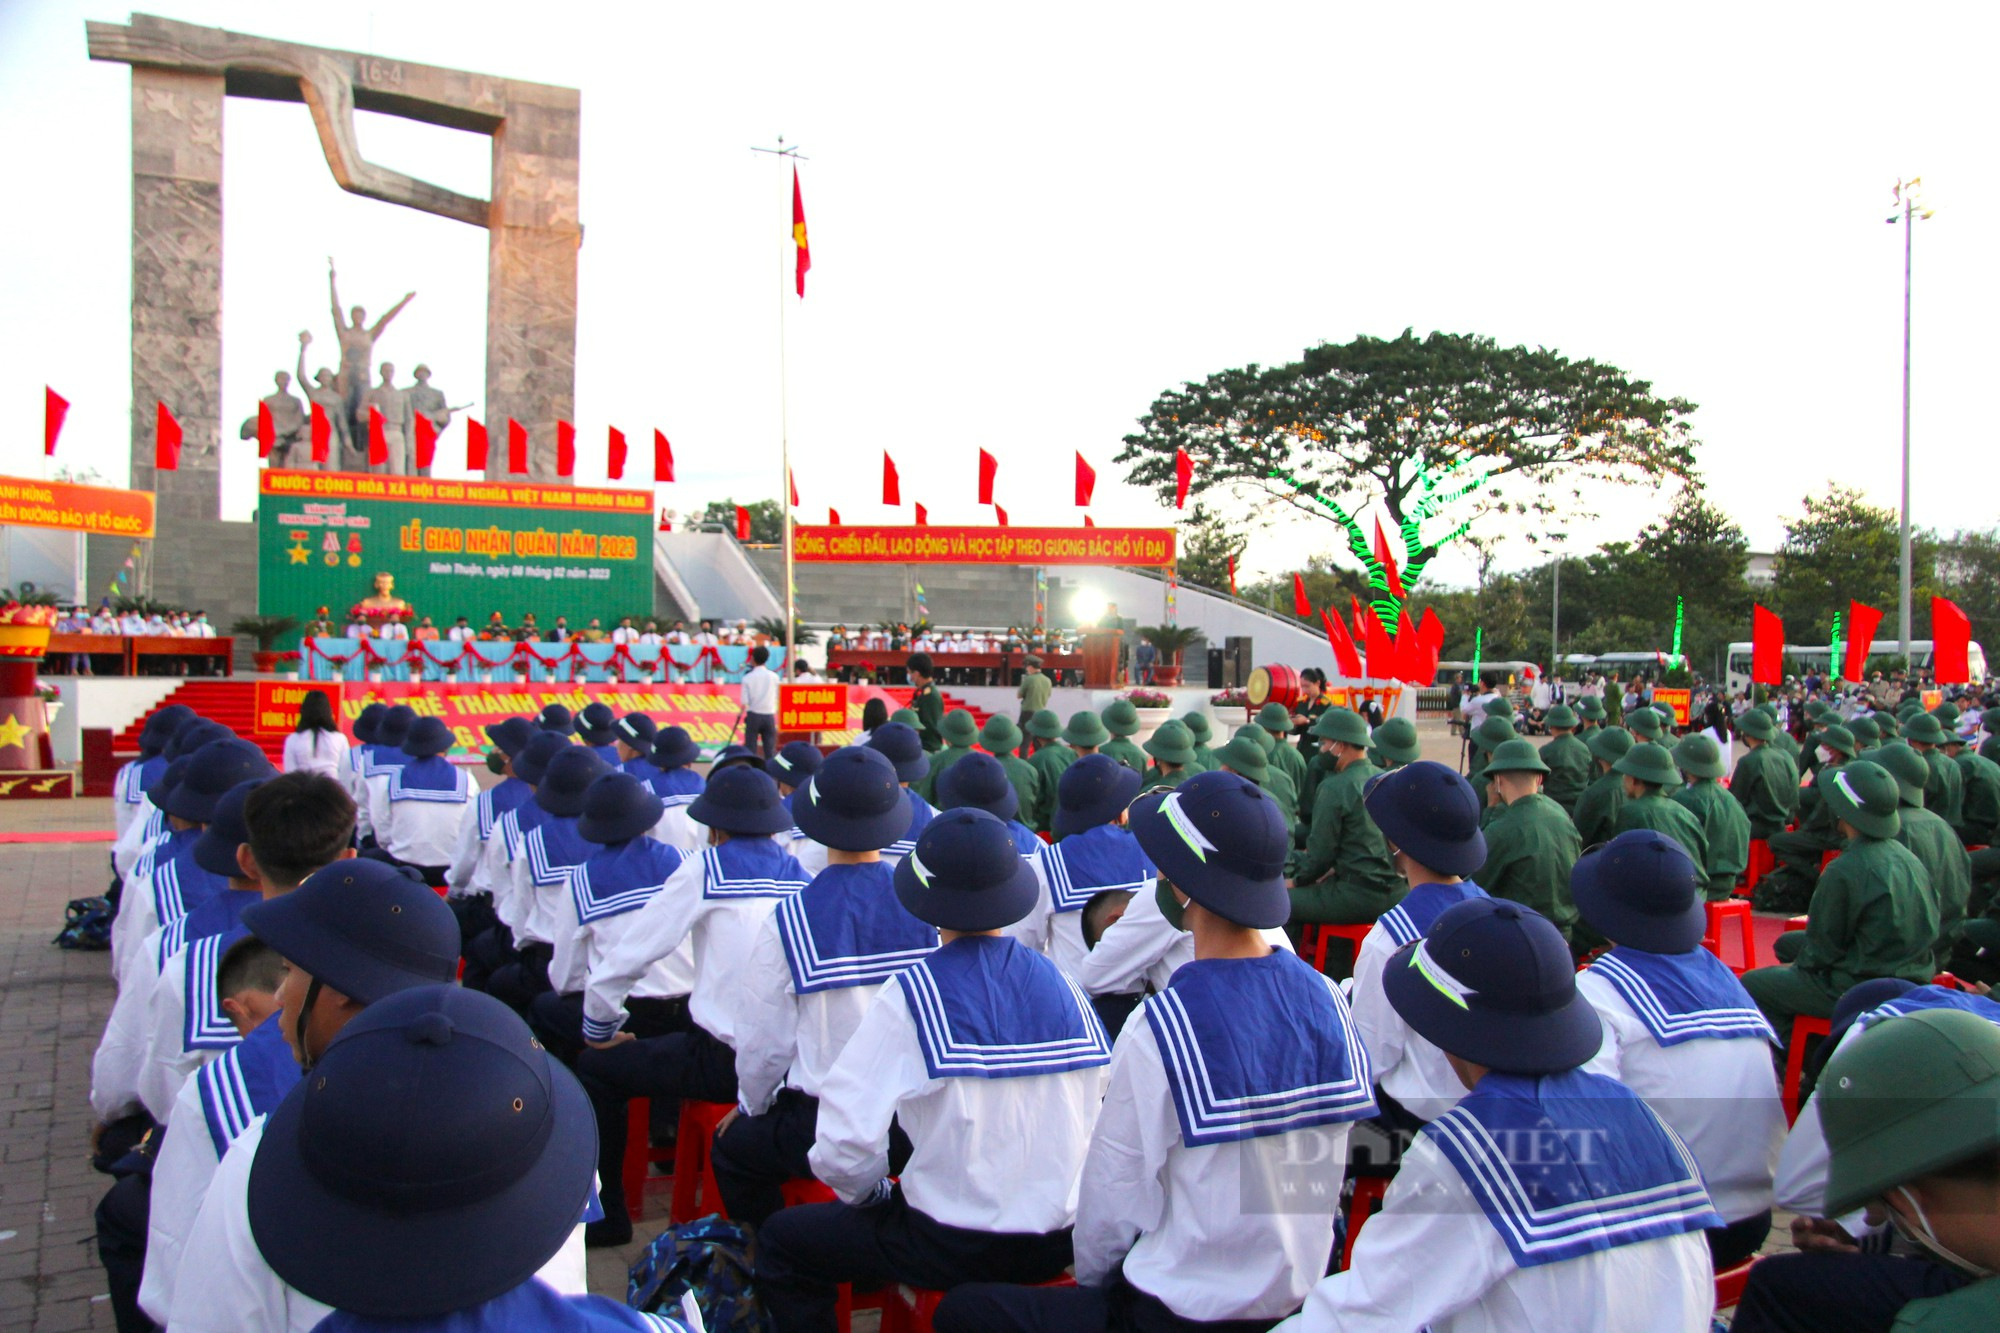 Xúc động lễ giao nhận 1.155 công dân lên đường nhập ngũ tại Ninh Thuận - Ảnh 4.